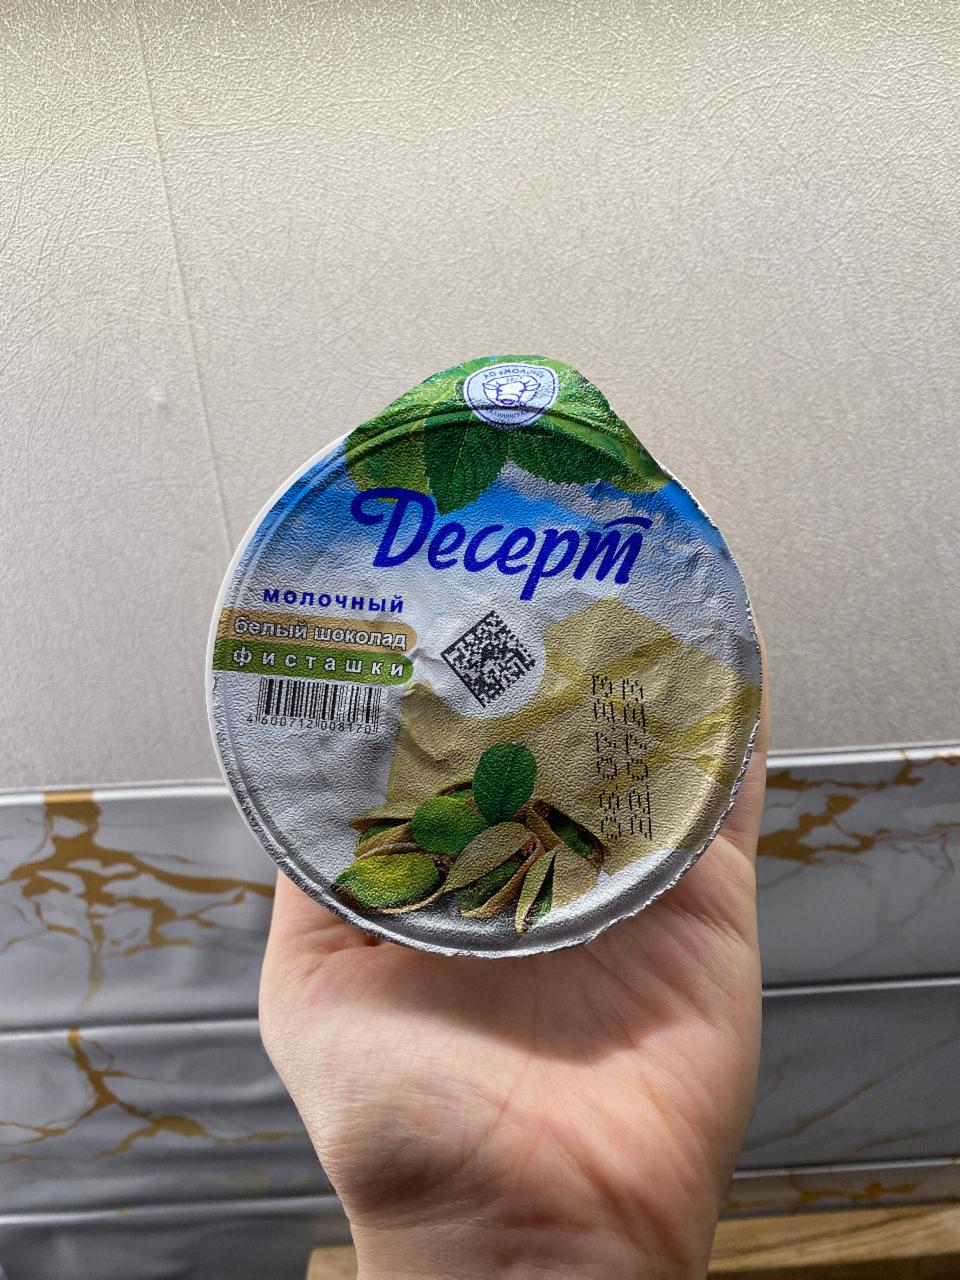 Фото - десерт молочный былый шоколад фисташки ОАО Молоко